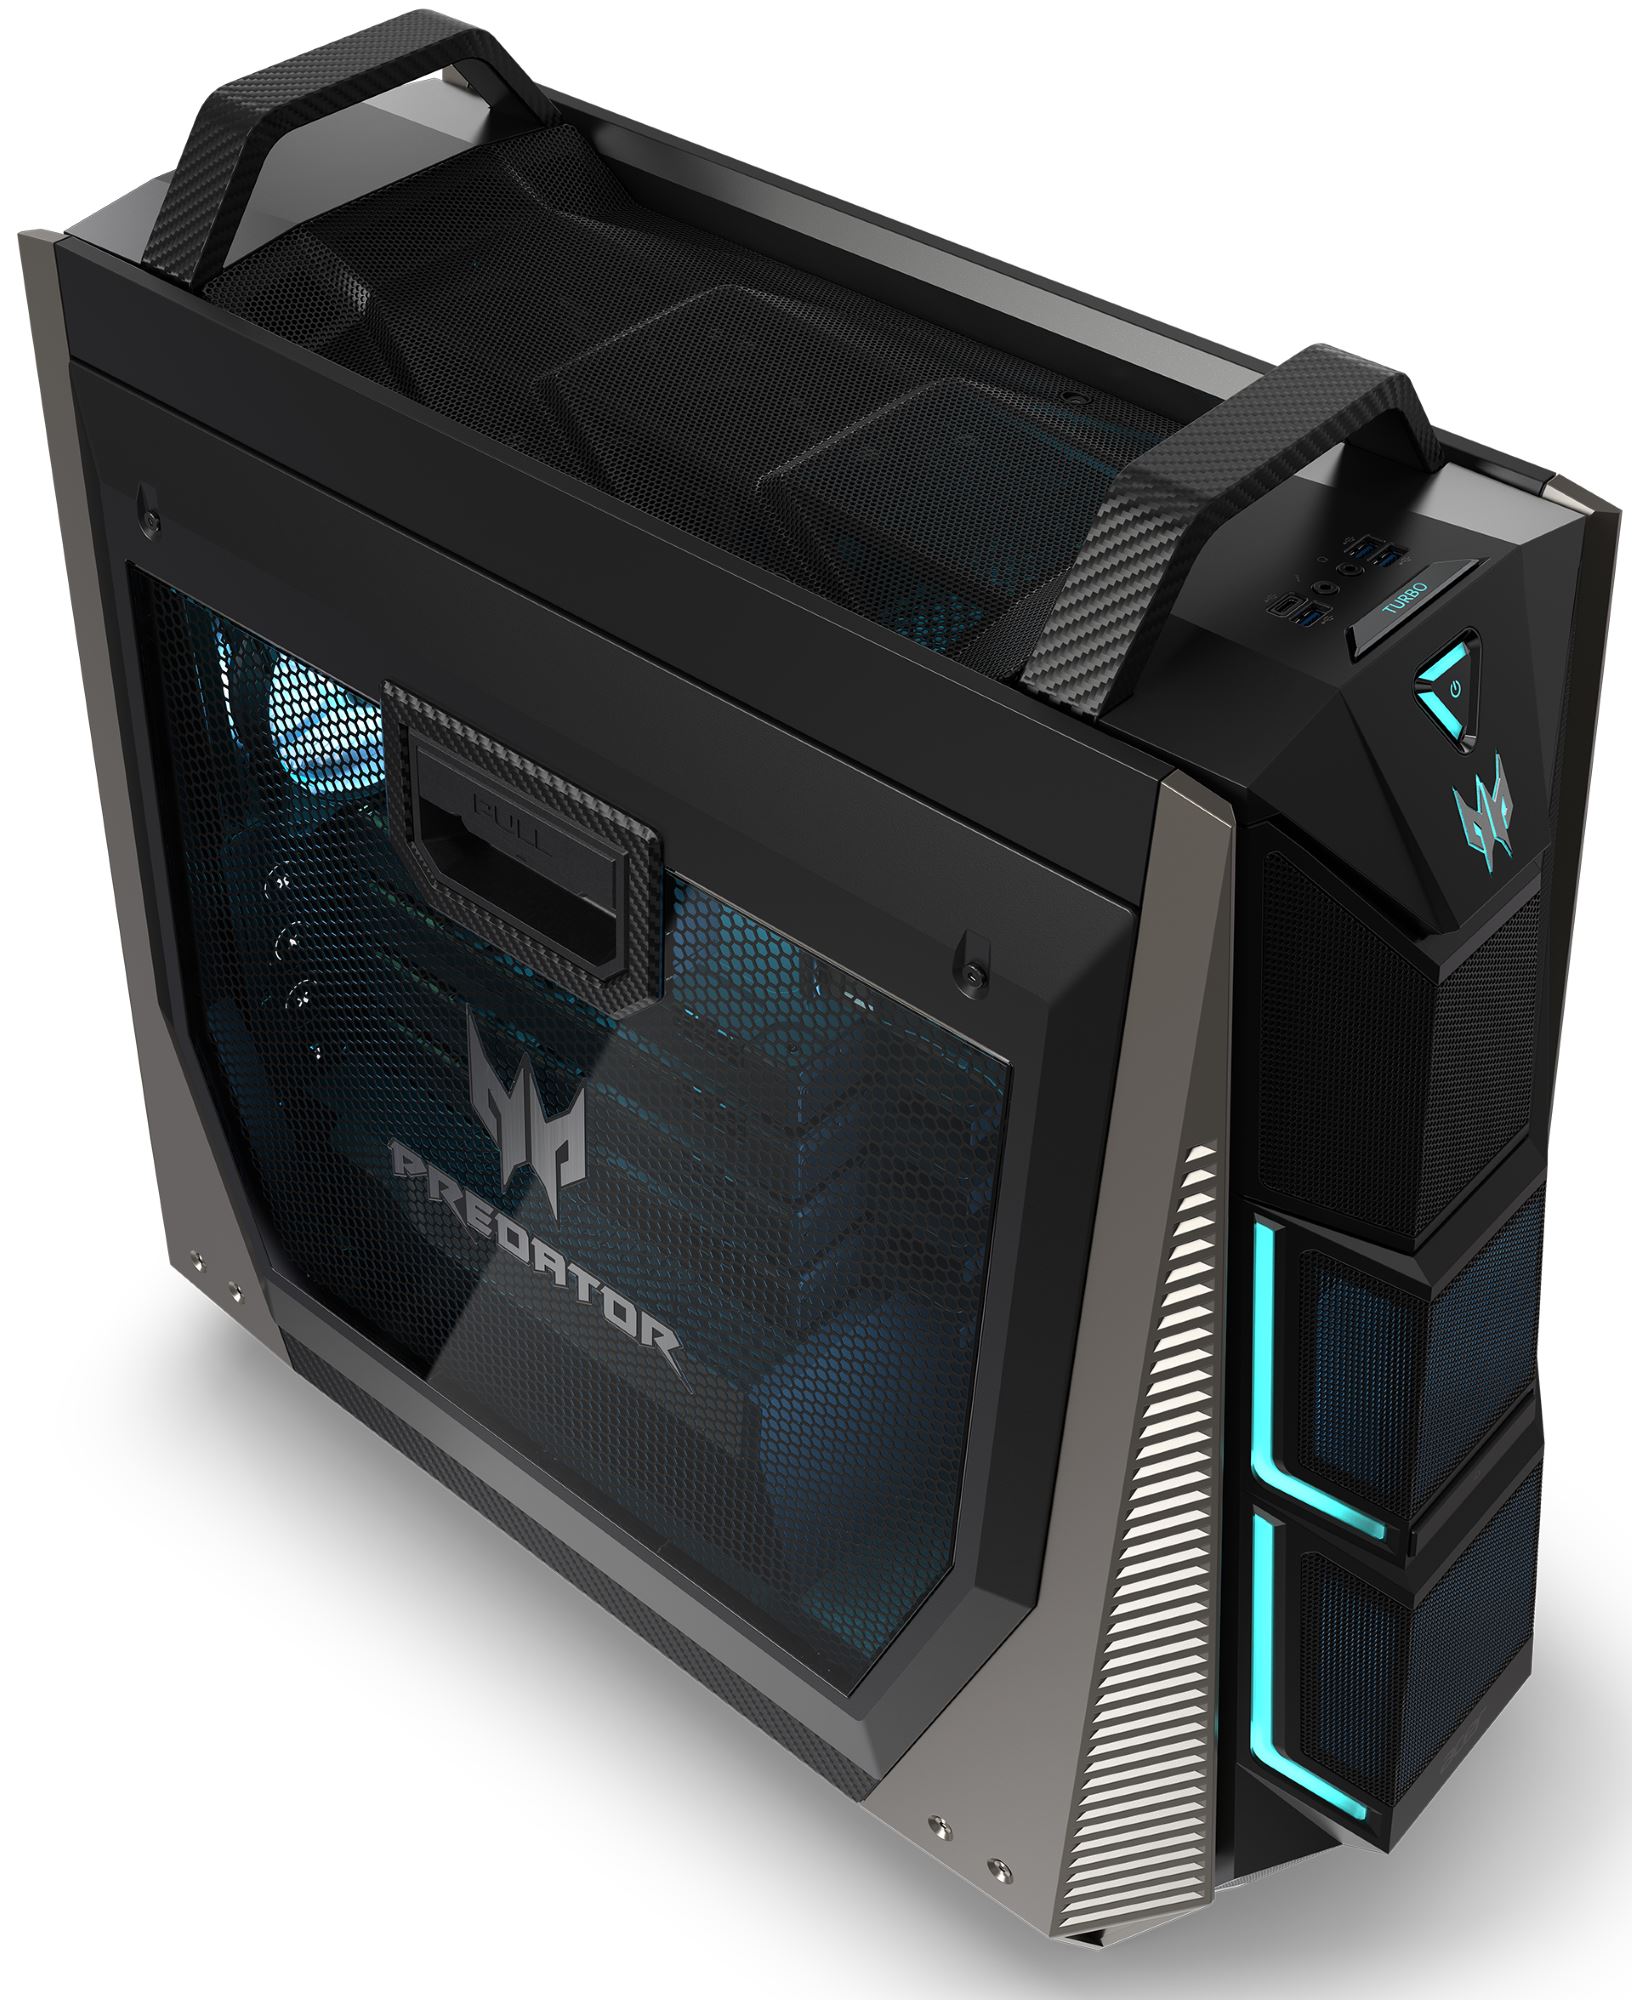 Acer Reveals Predator Orion 9000 Gaming Desktop Up To 18 Cores 4 Vega